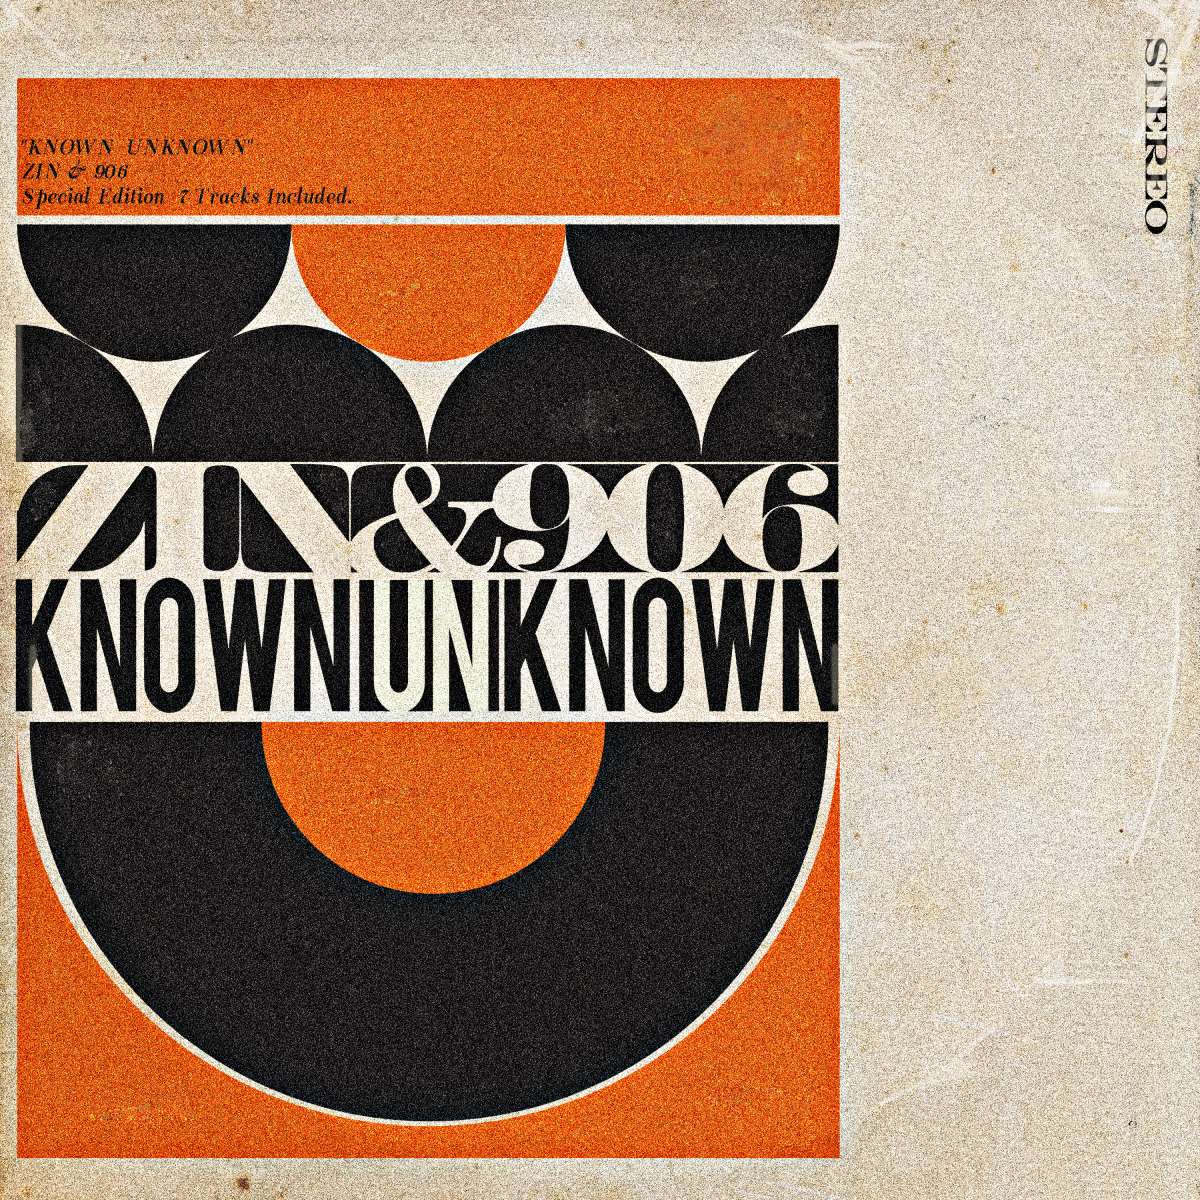 注目のSSW・ZINとプロデューサーデュオ・906 / Nine-O-SixによるダブルネームEP『KNOWN UNKNOWN』リリース |  block.fm